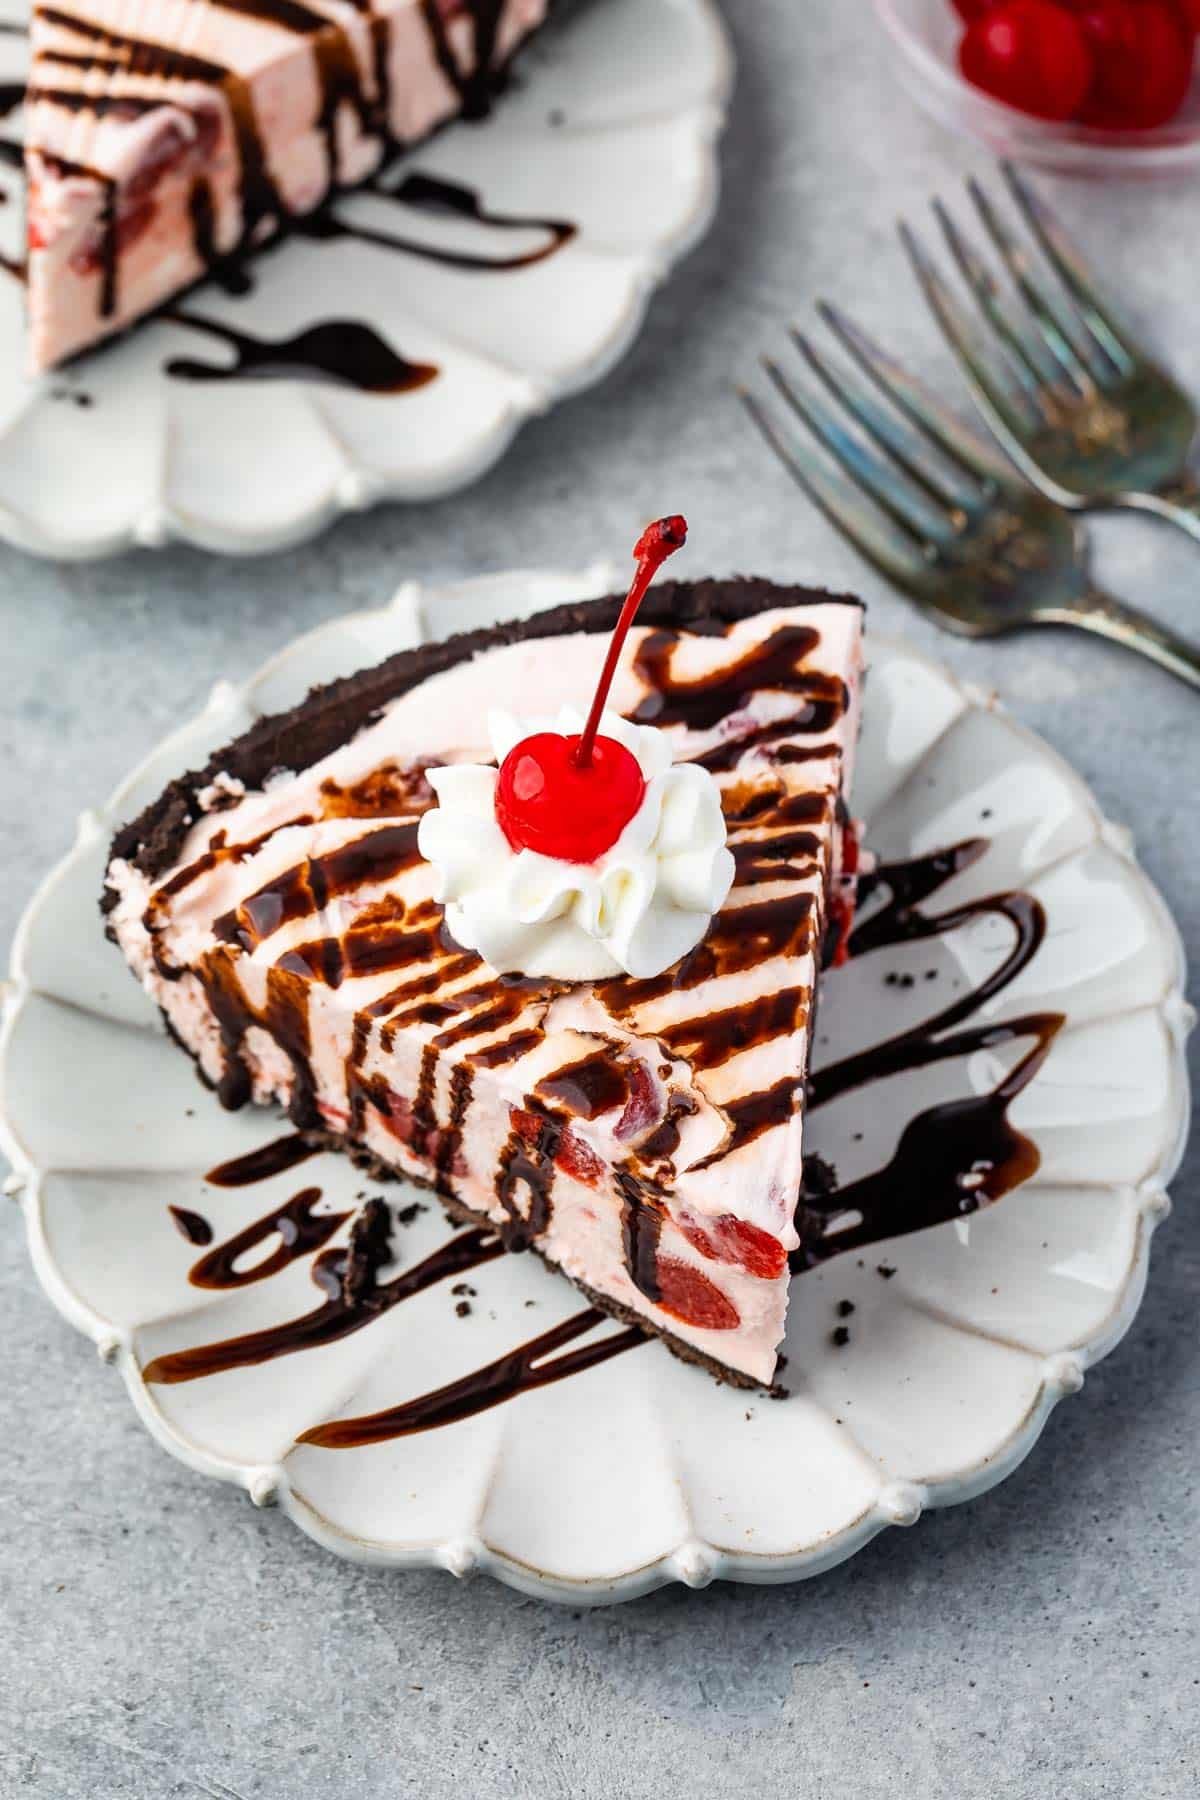 Chocolate-Cherry Ice Cream Cake Recipe: How to Make It